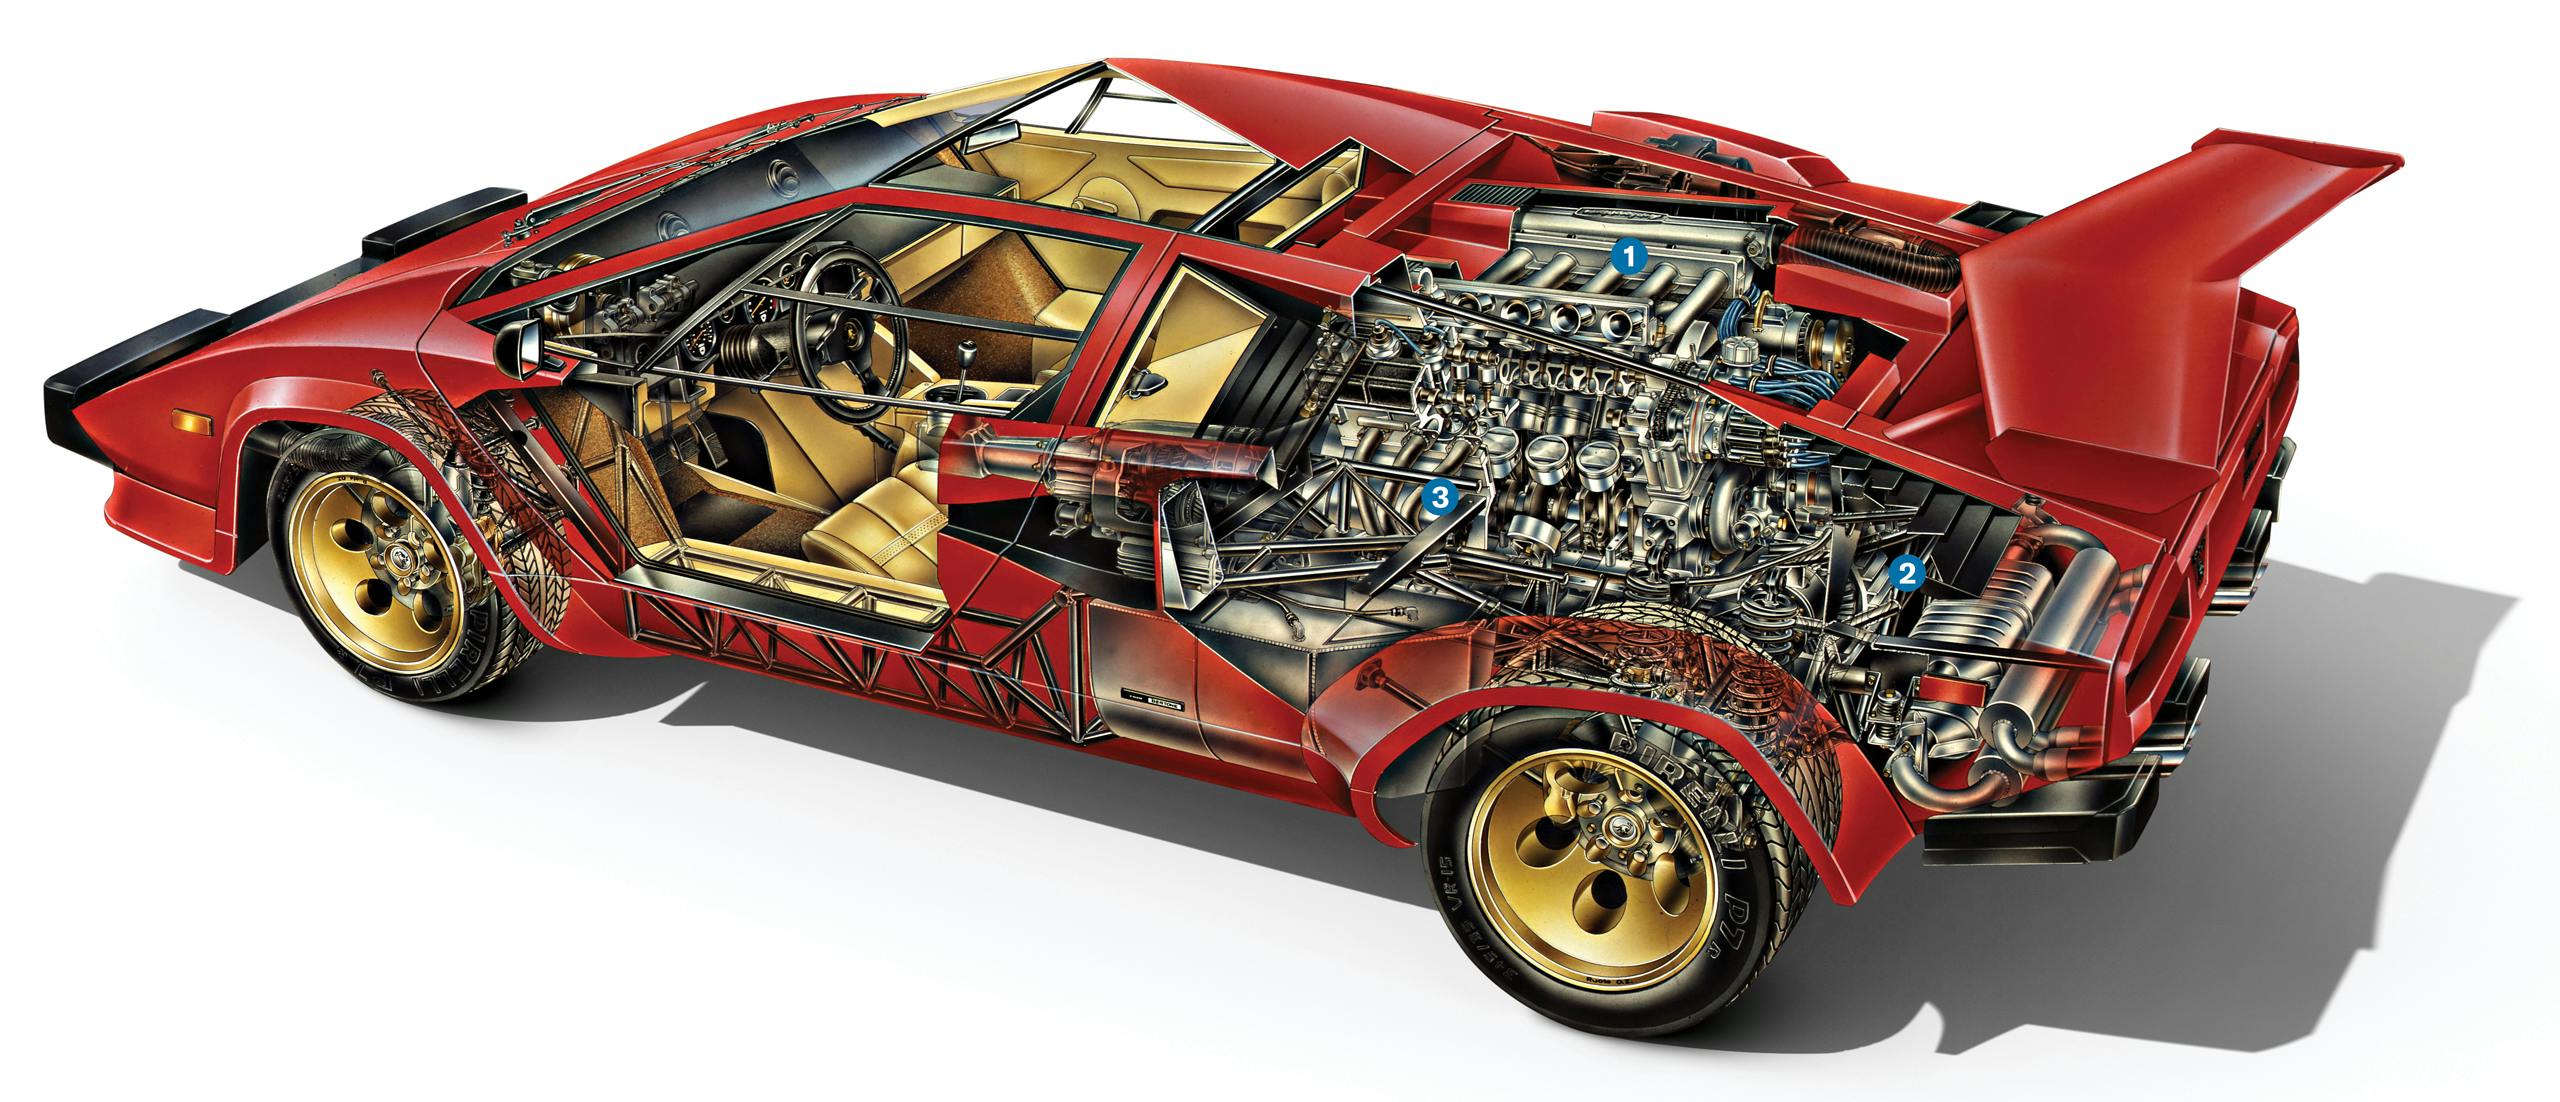 Ferruccio V12 Lamborghini Engine countach transparent graphic